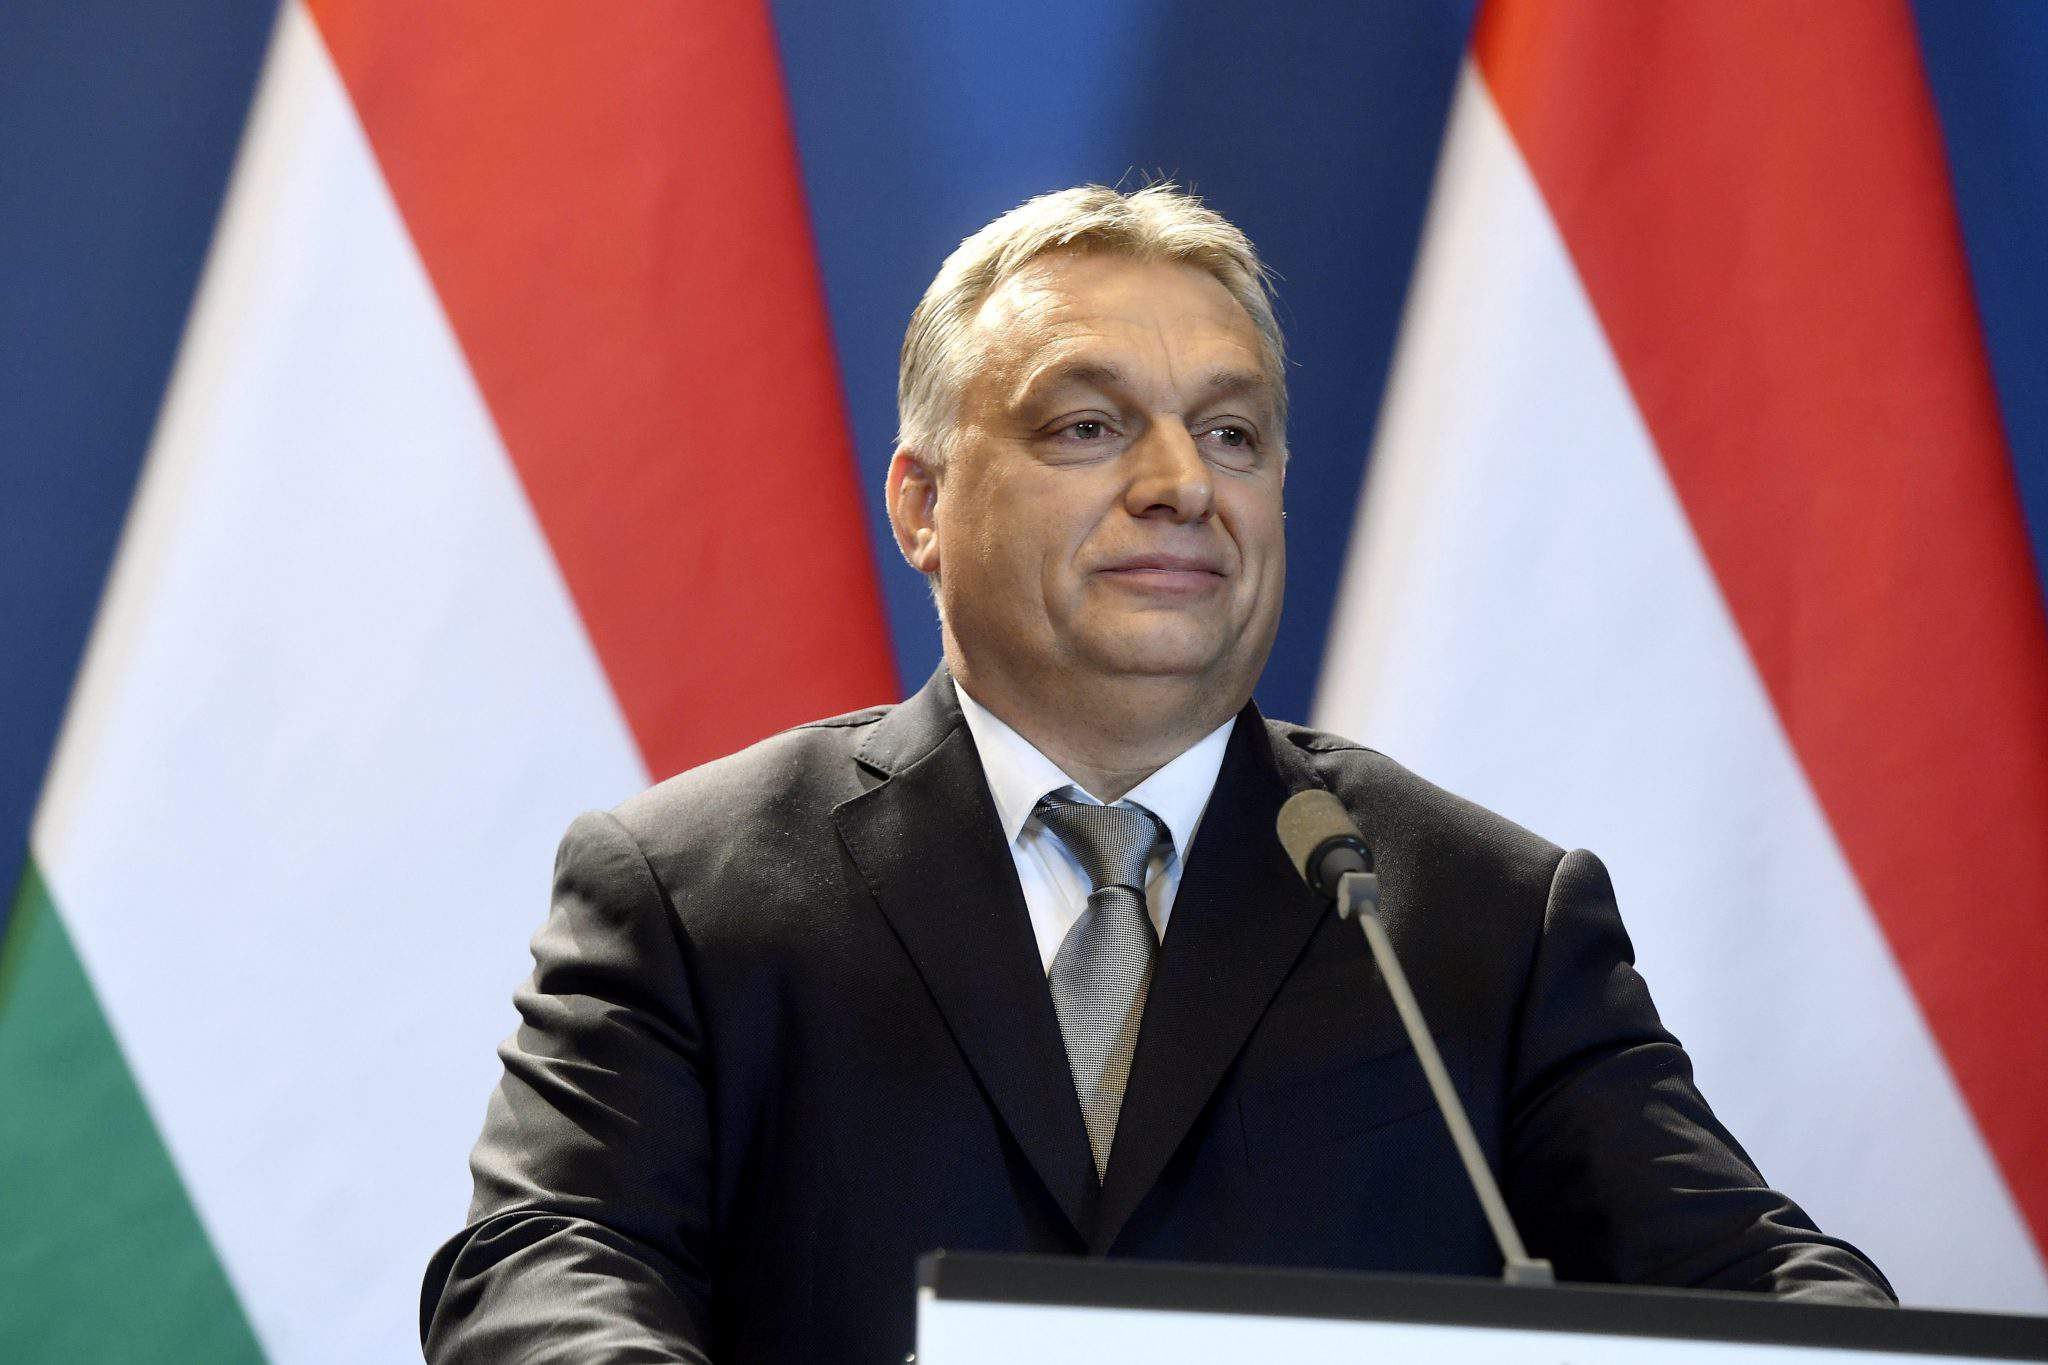 फ़िदेज़ की जीत से हंगेरियन लोकतंत्र को खतरा हो सकता है